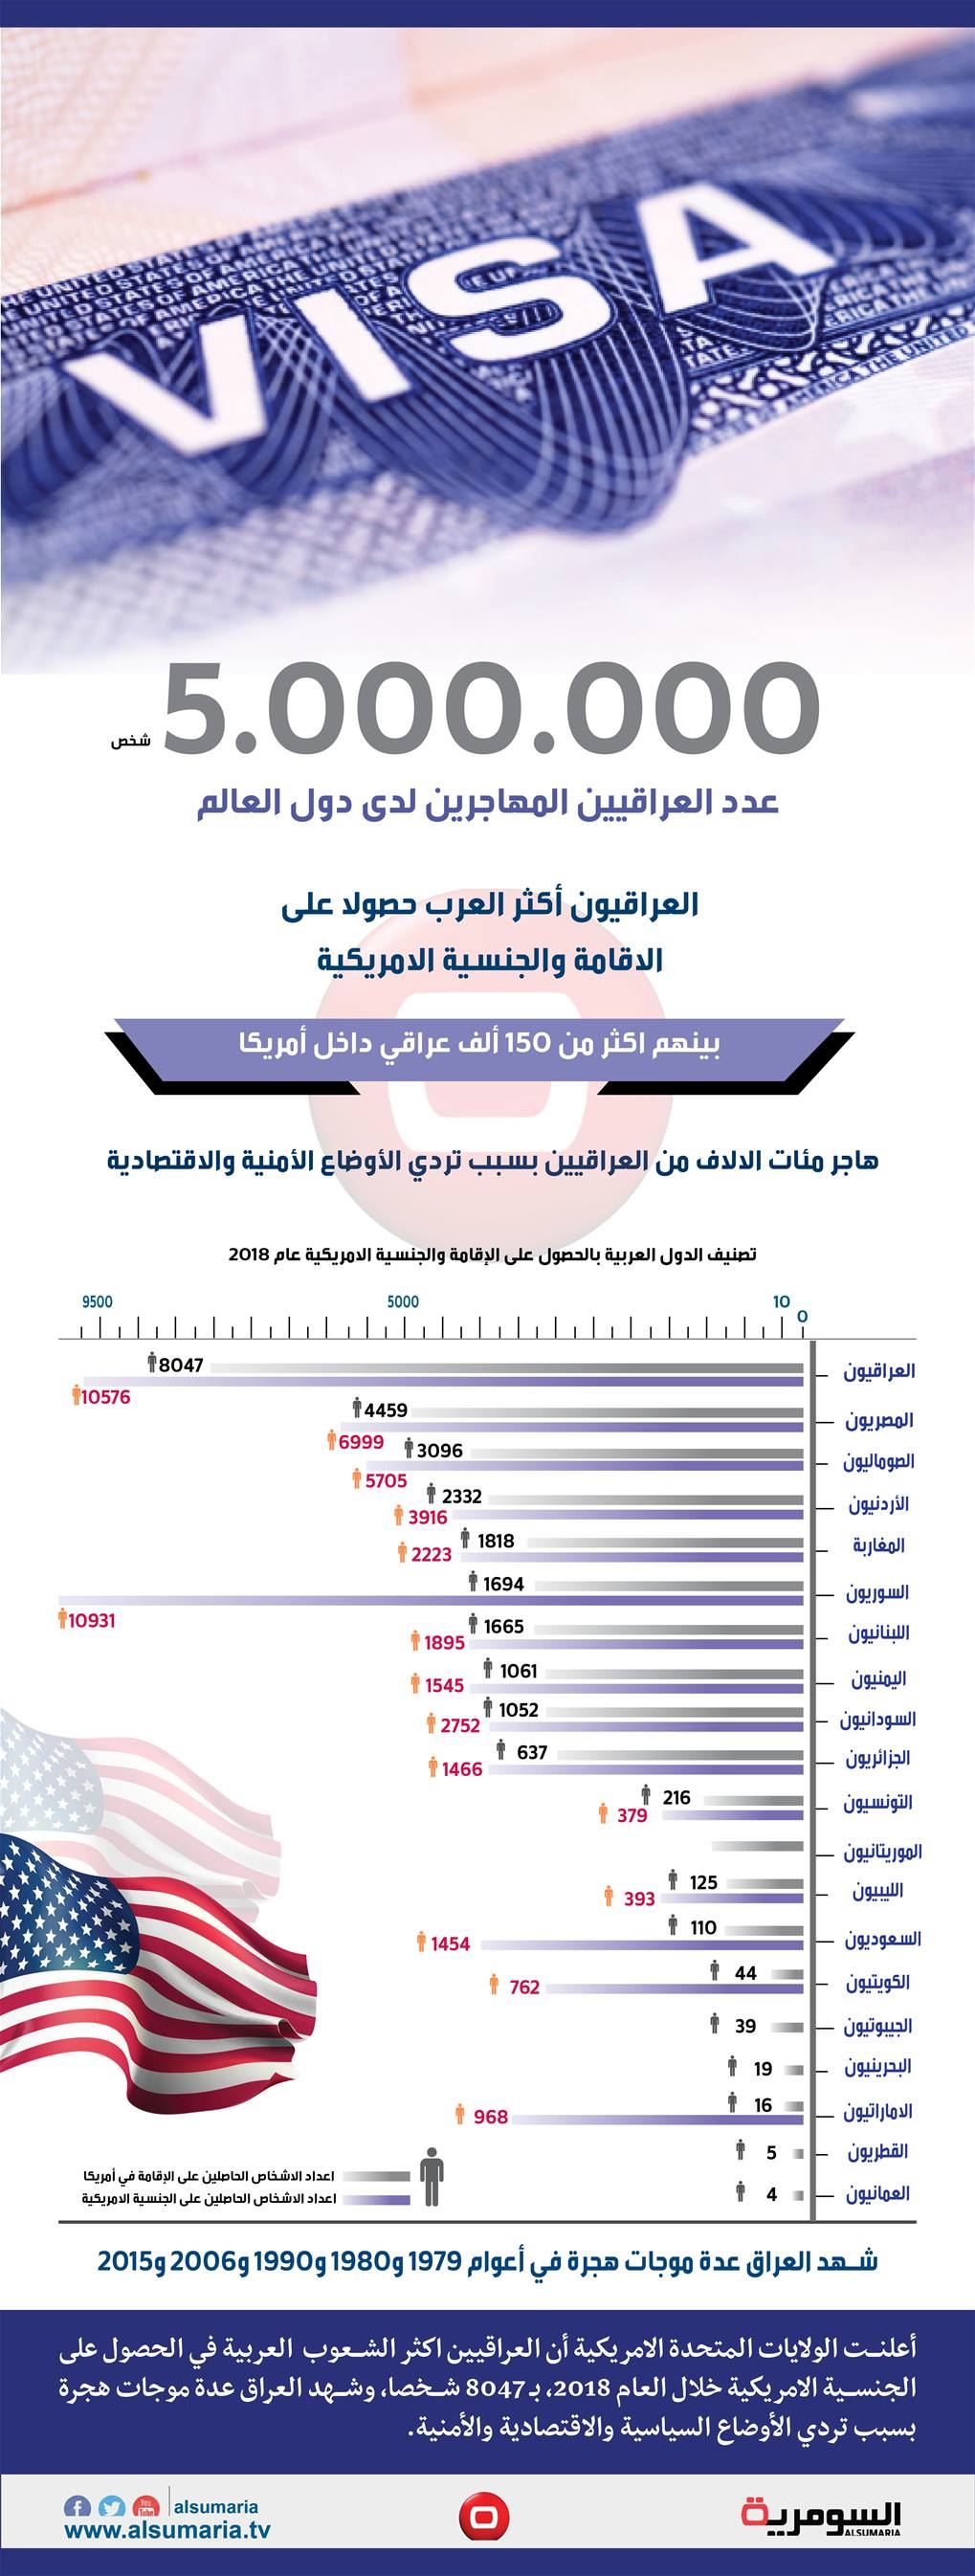 بالانفوغراف.. عدد العراقيين المهاجرين لدى دول العالم